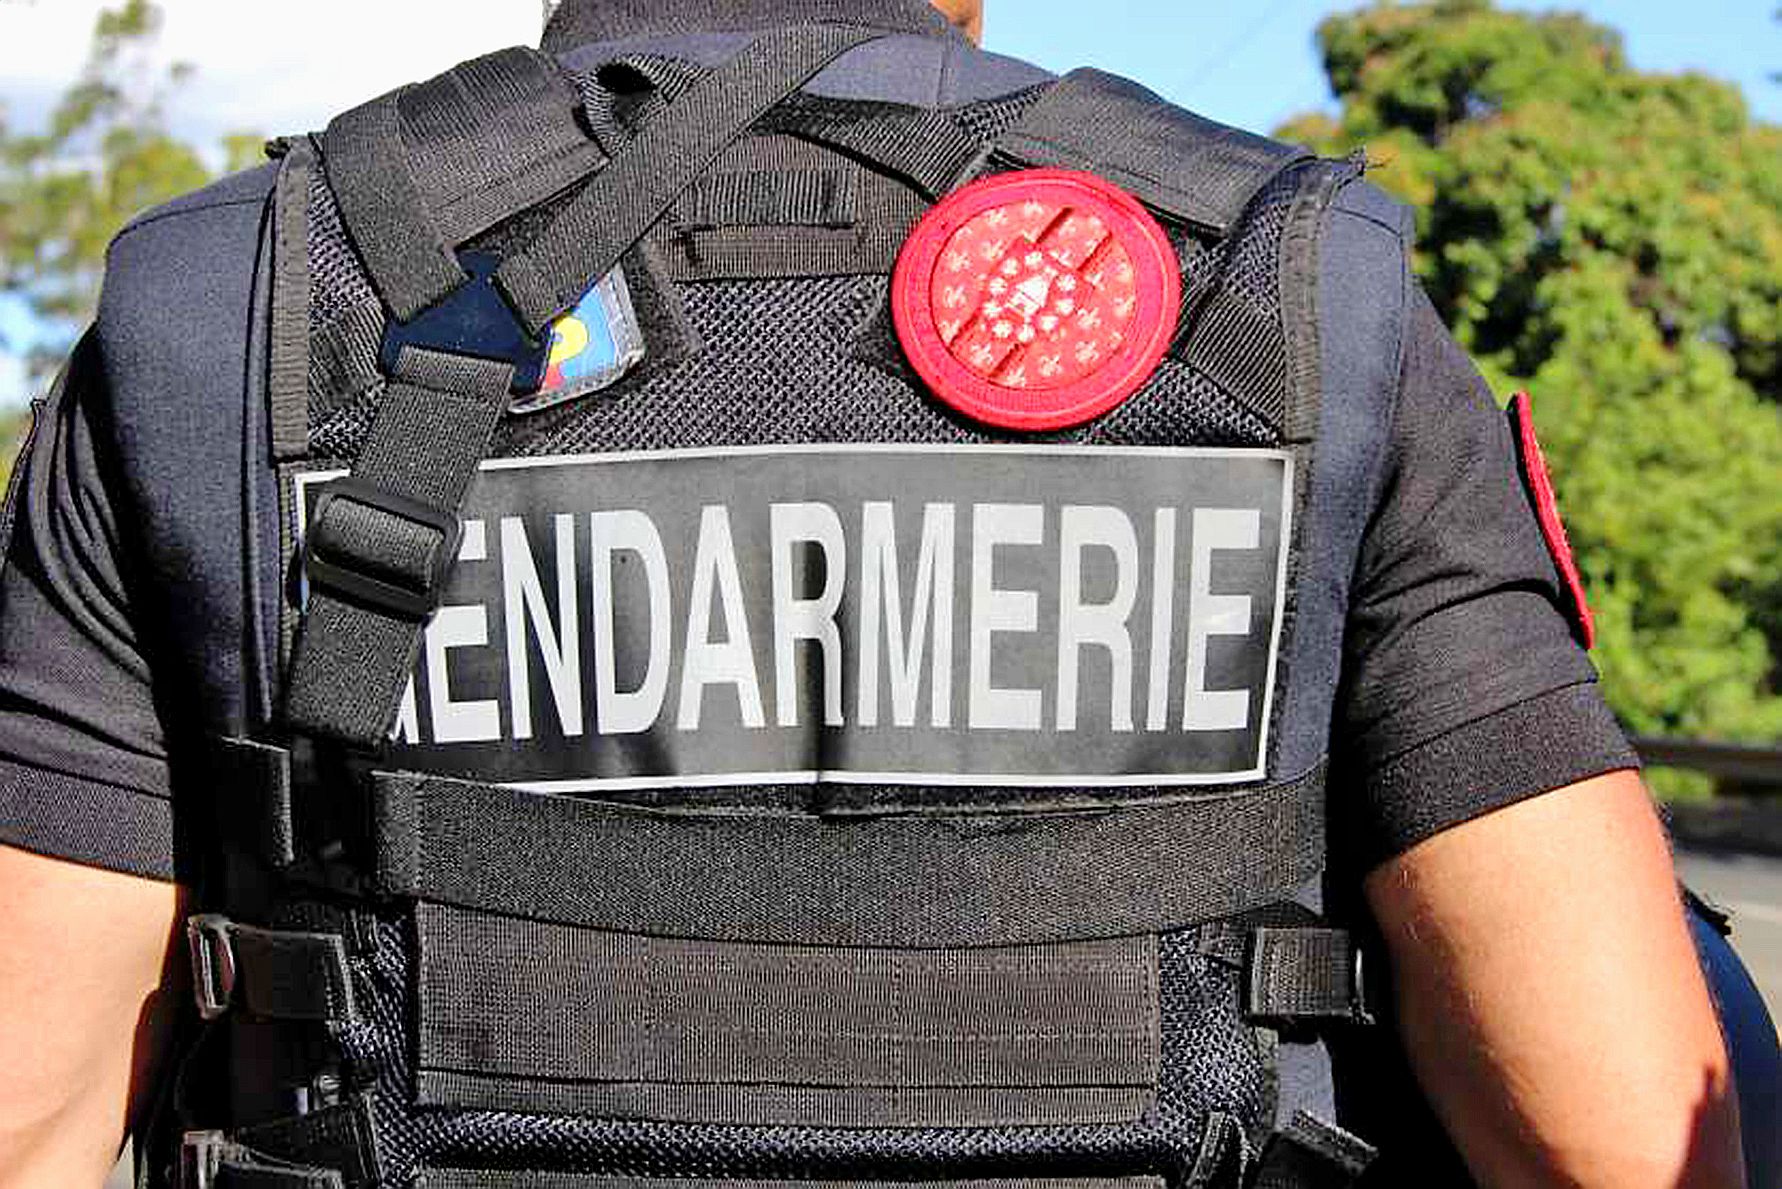 Les gendarmes alertent la population sur une légère recrudescence de vols par escalade. photo Archives LNC